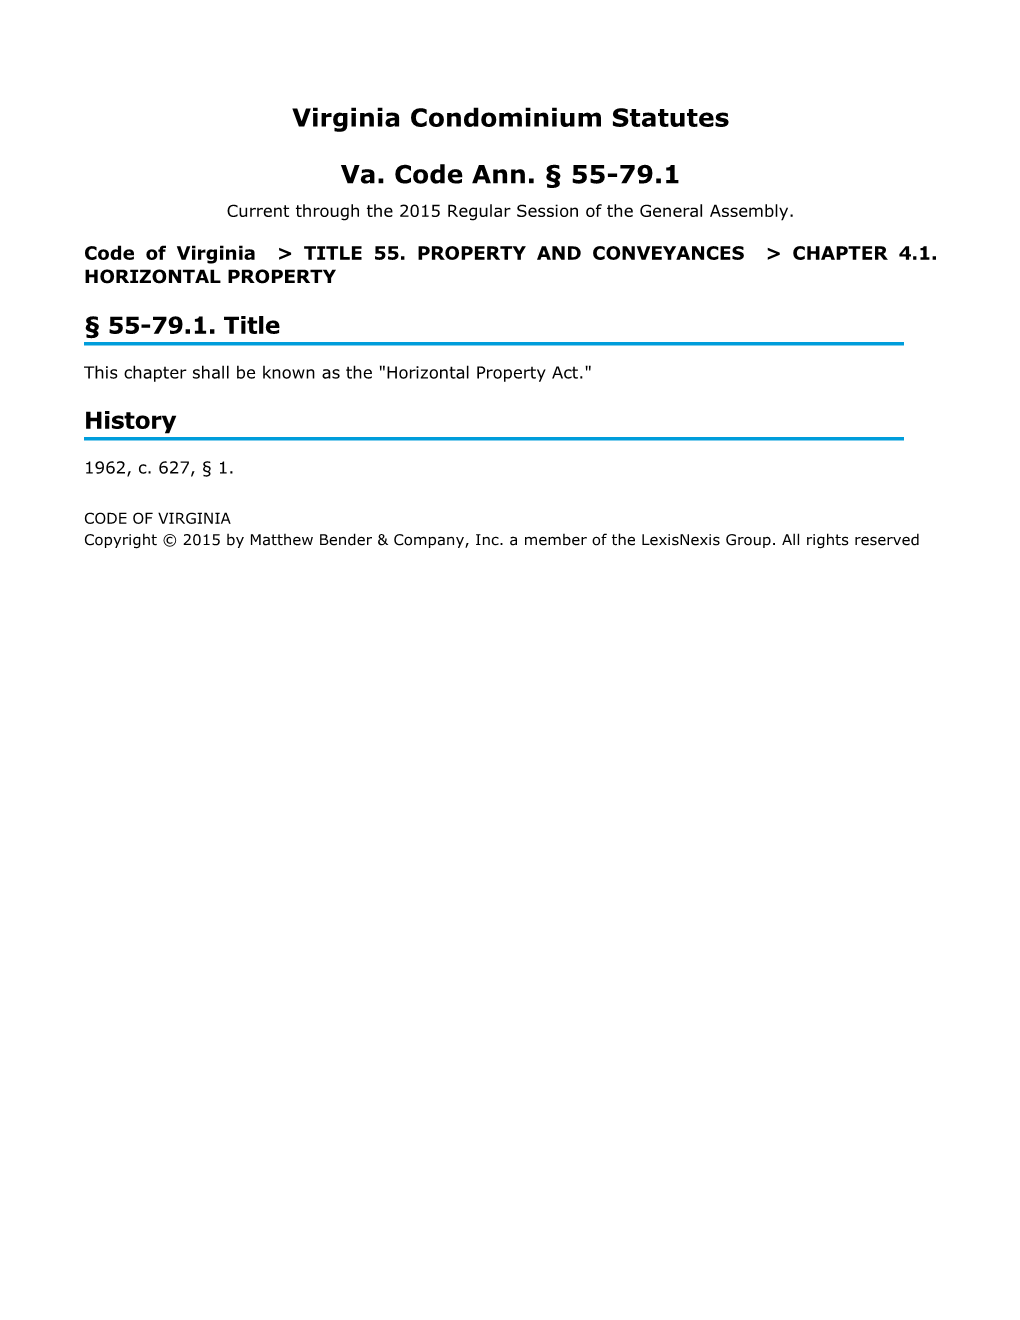 Virginia Condominium Statutes Va. Code Ann. § 55-79.1